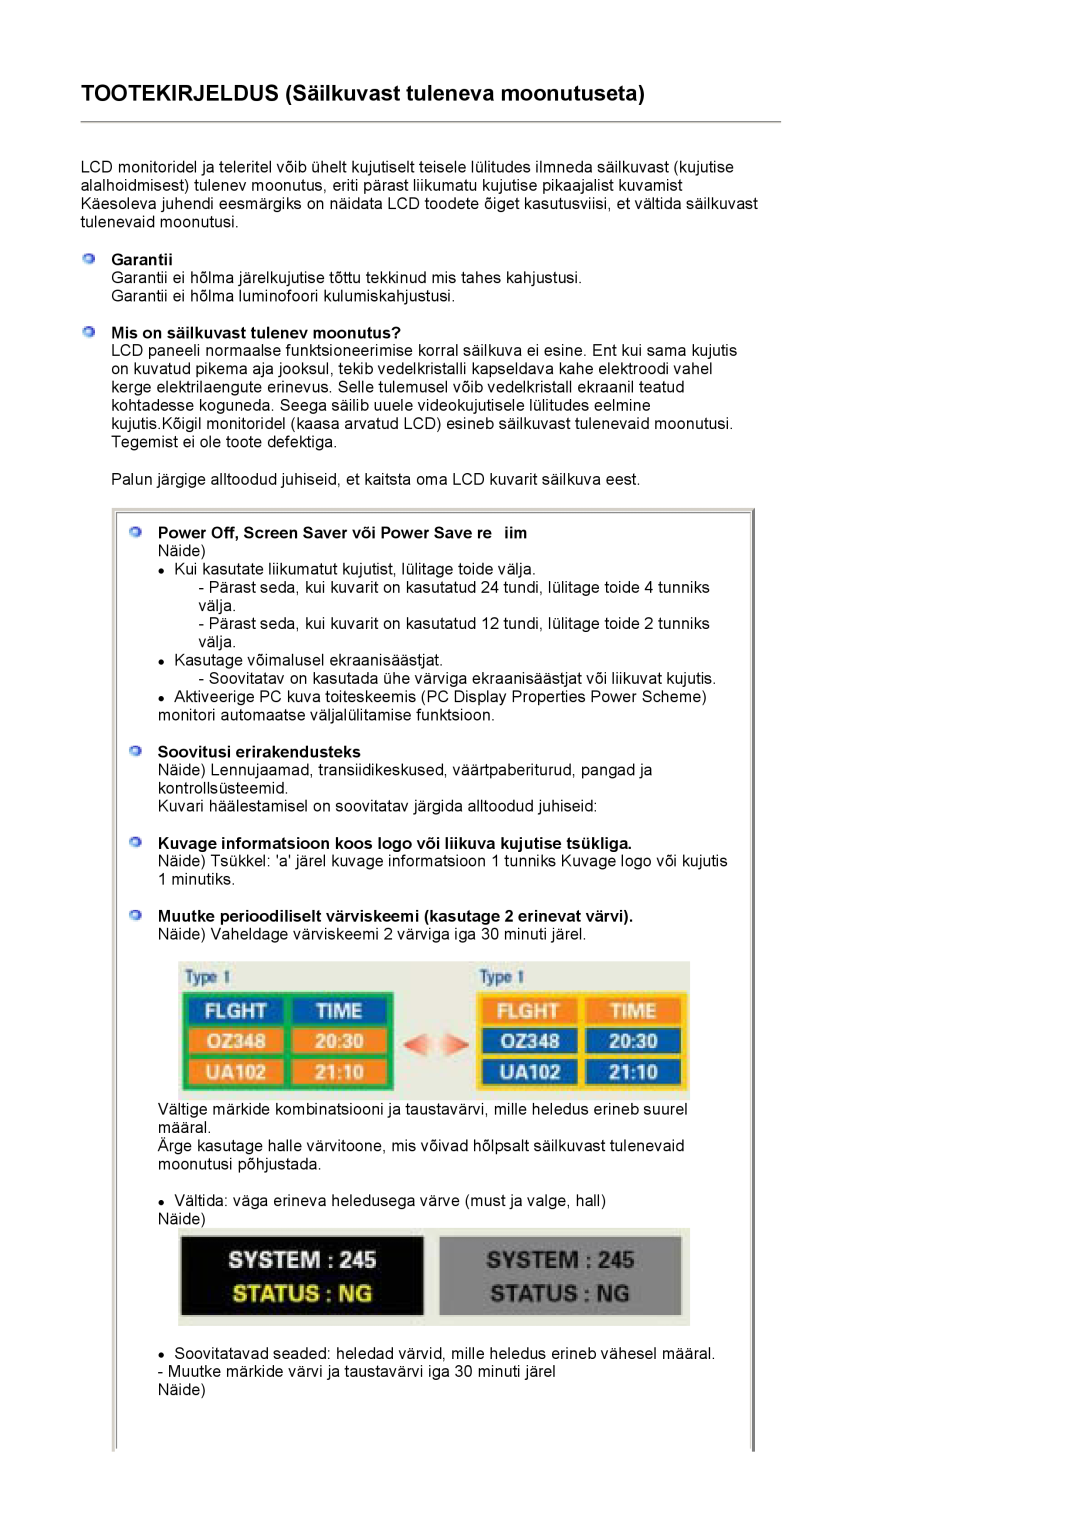 Samsung LS19HADKSE/EDC manual TOOTEKIRJELDUS Säilkuvast tuleneva moonutuseta, Garantii, Mis on säilkuvast tulenev moonutus? 